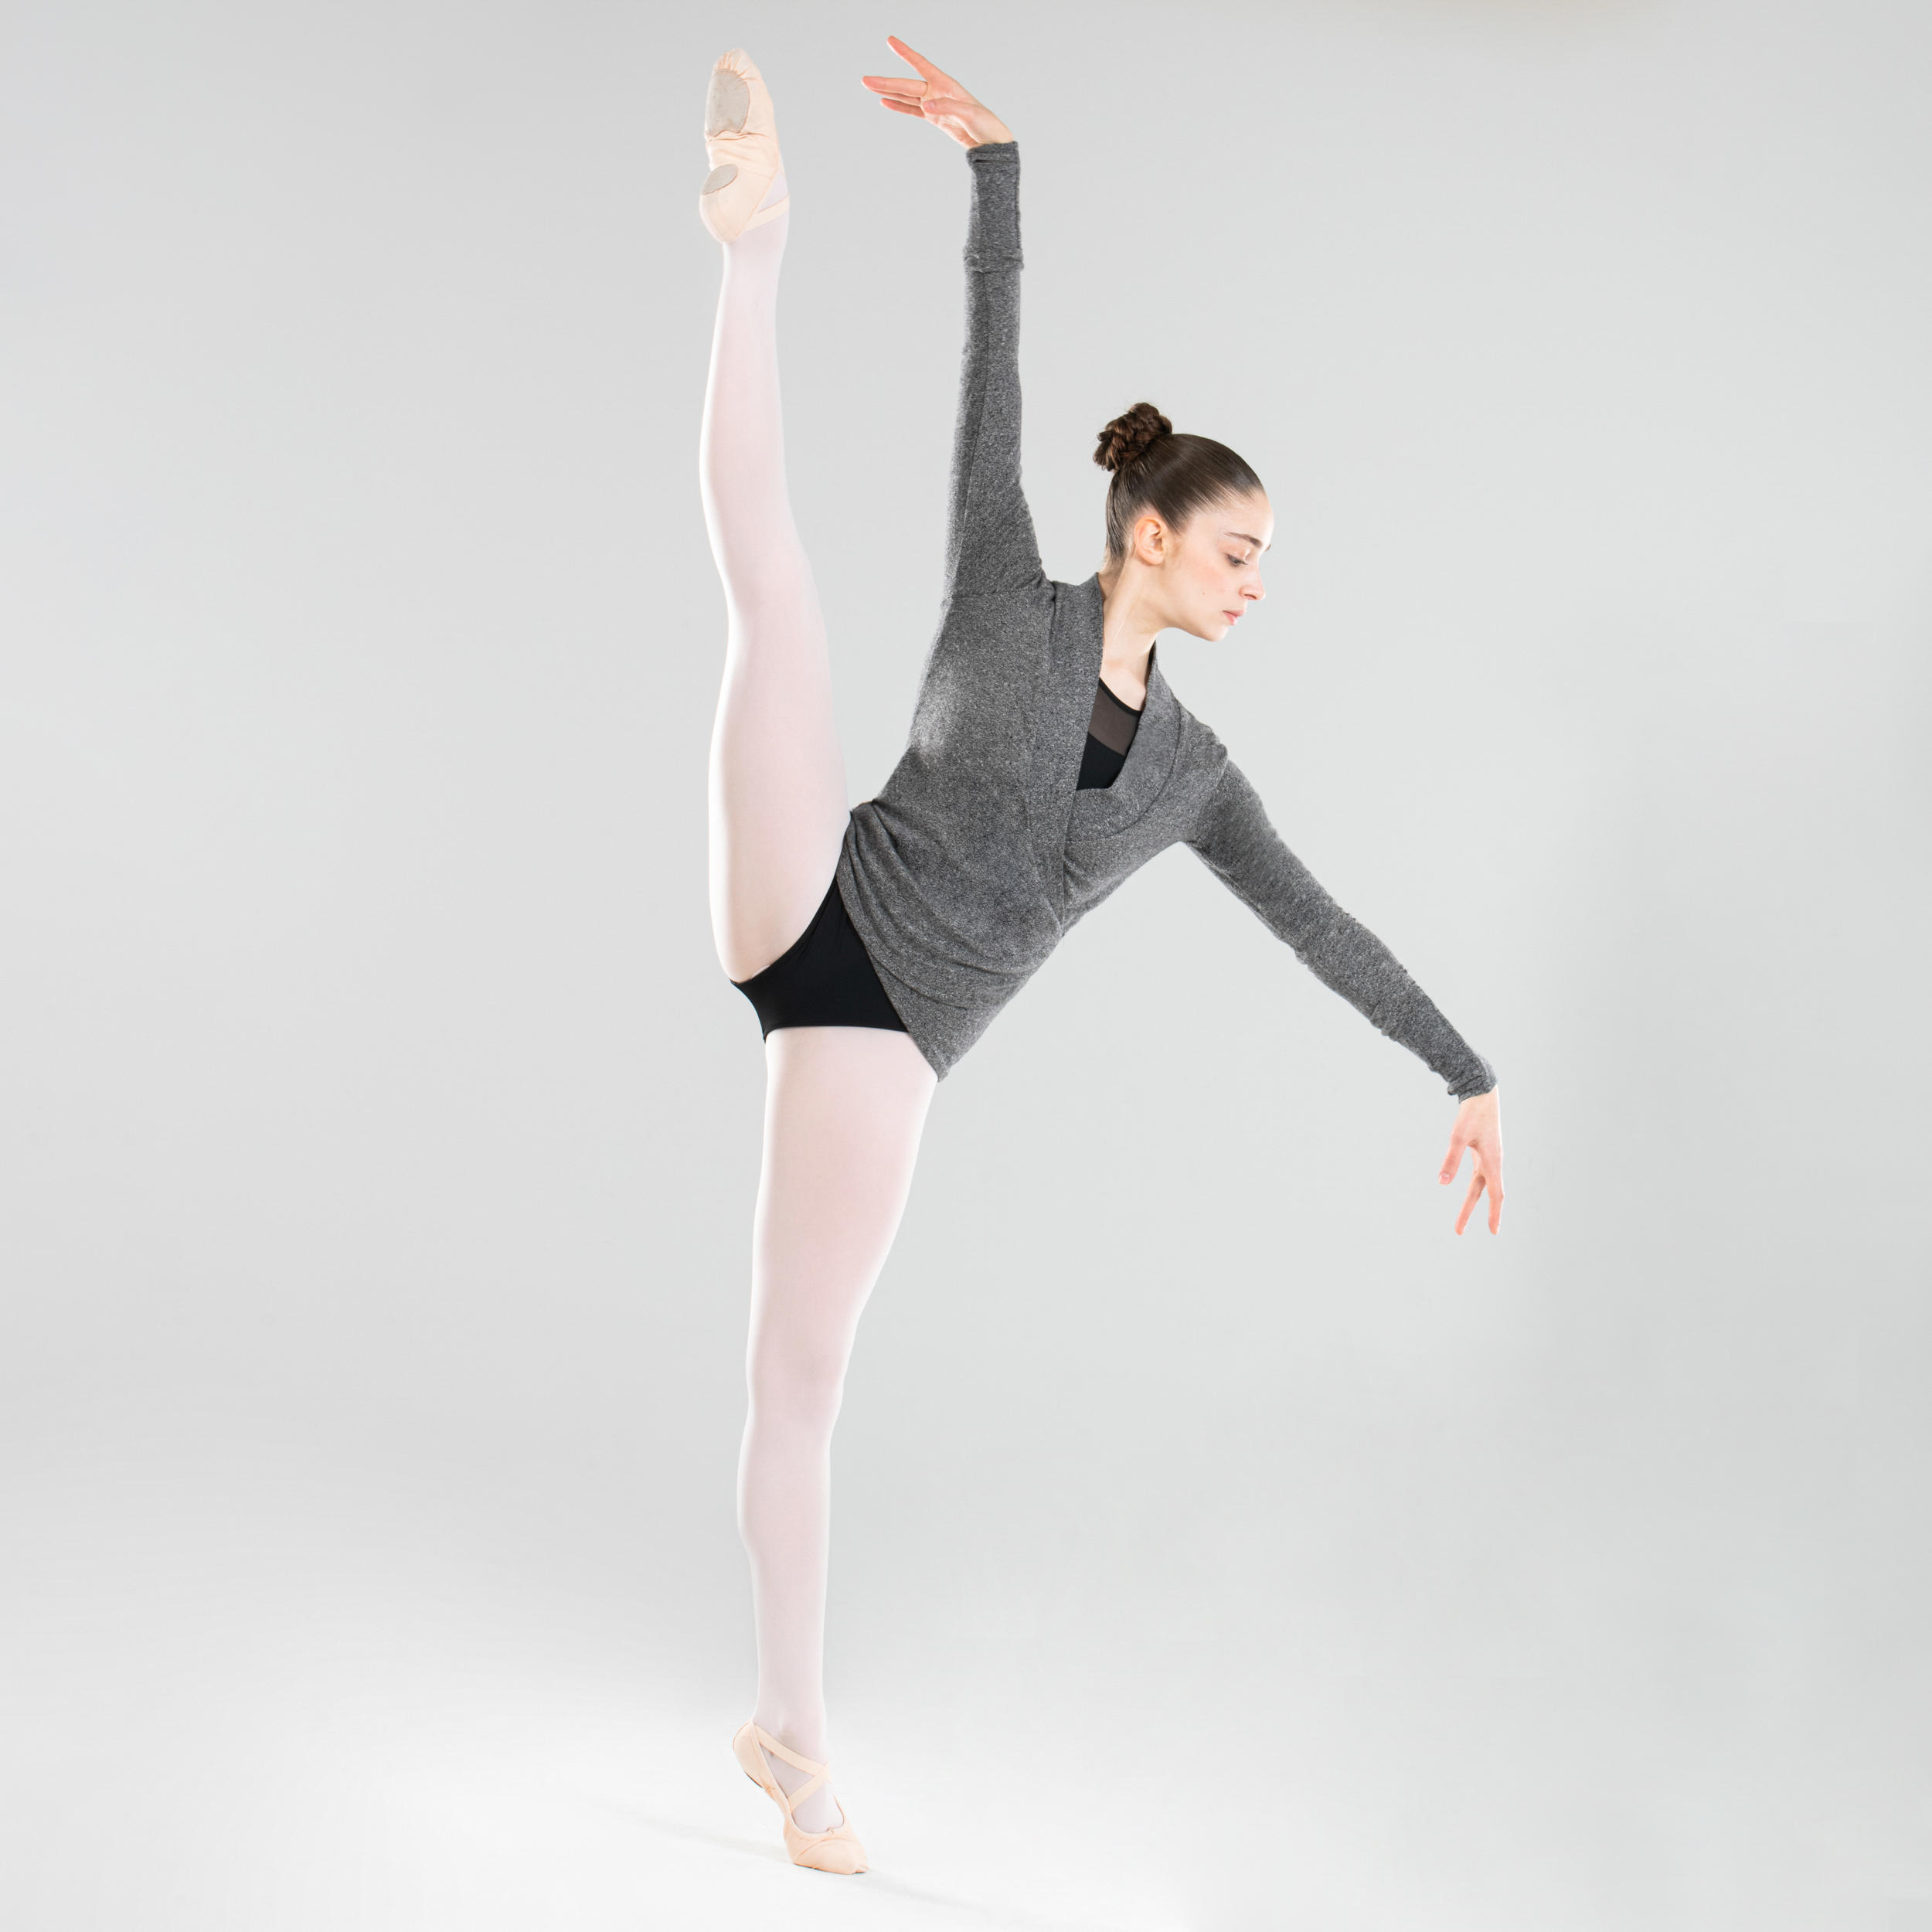 STAREVER Women's Ballet Wrap Over Top - Mottled grey